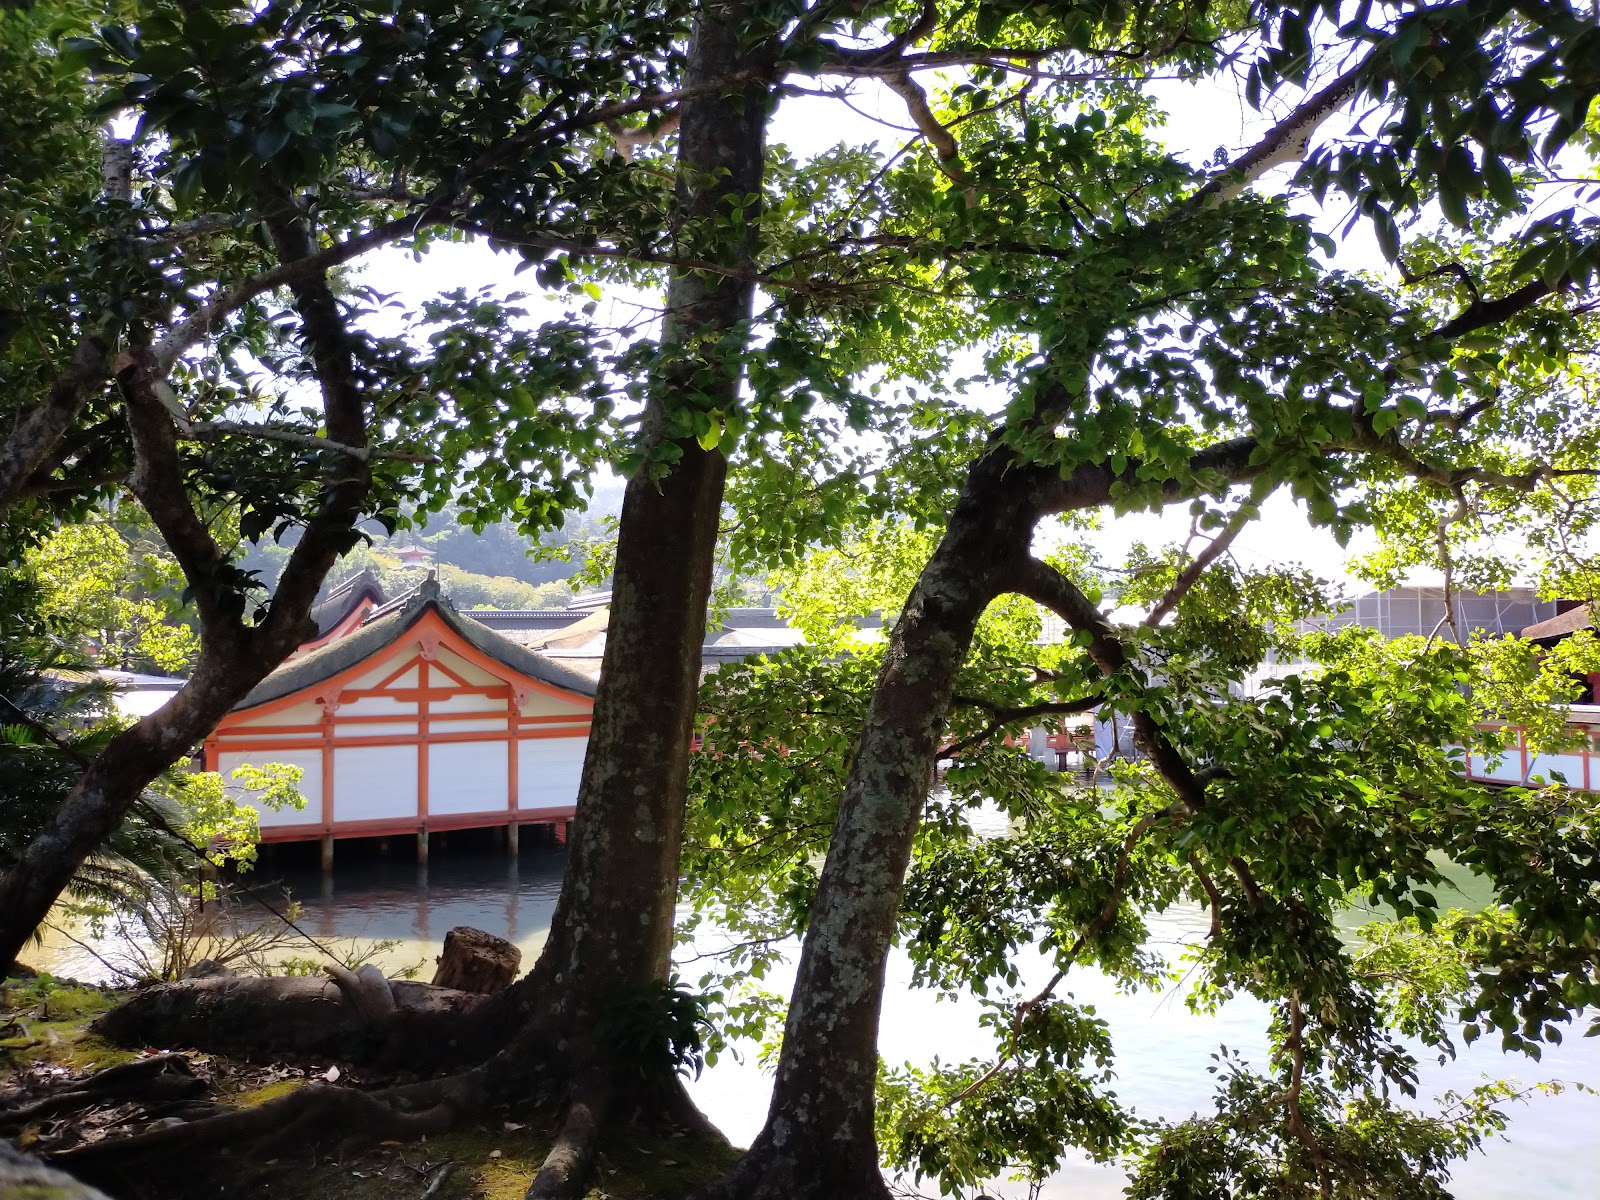 向こうに厳島神社が見えます。赤い柱が美しい。